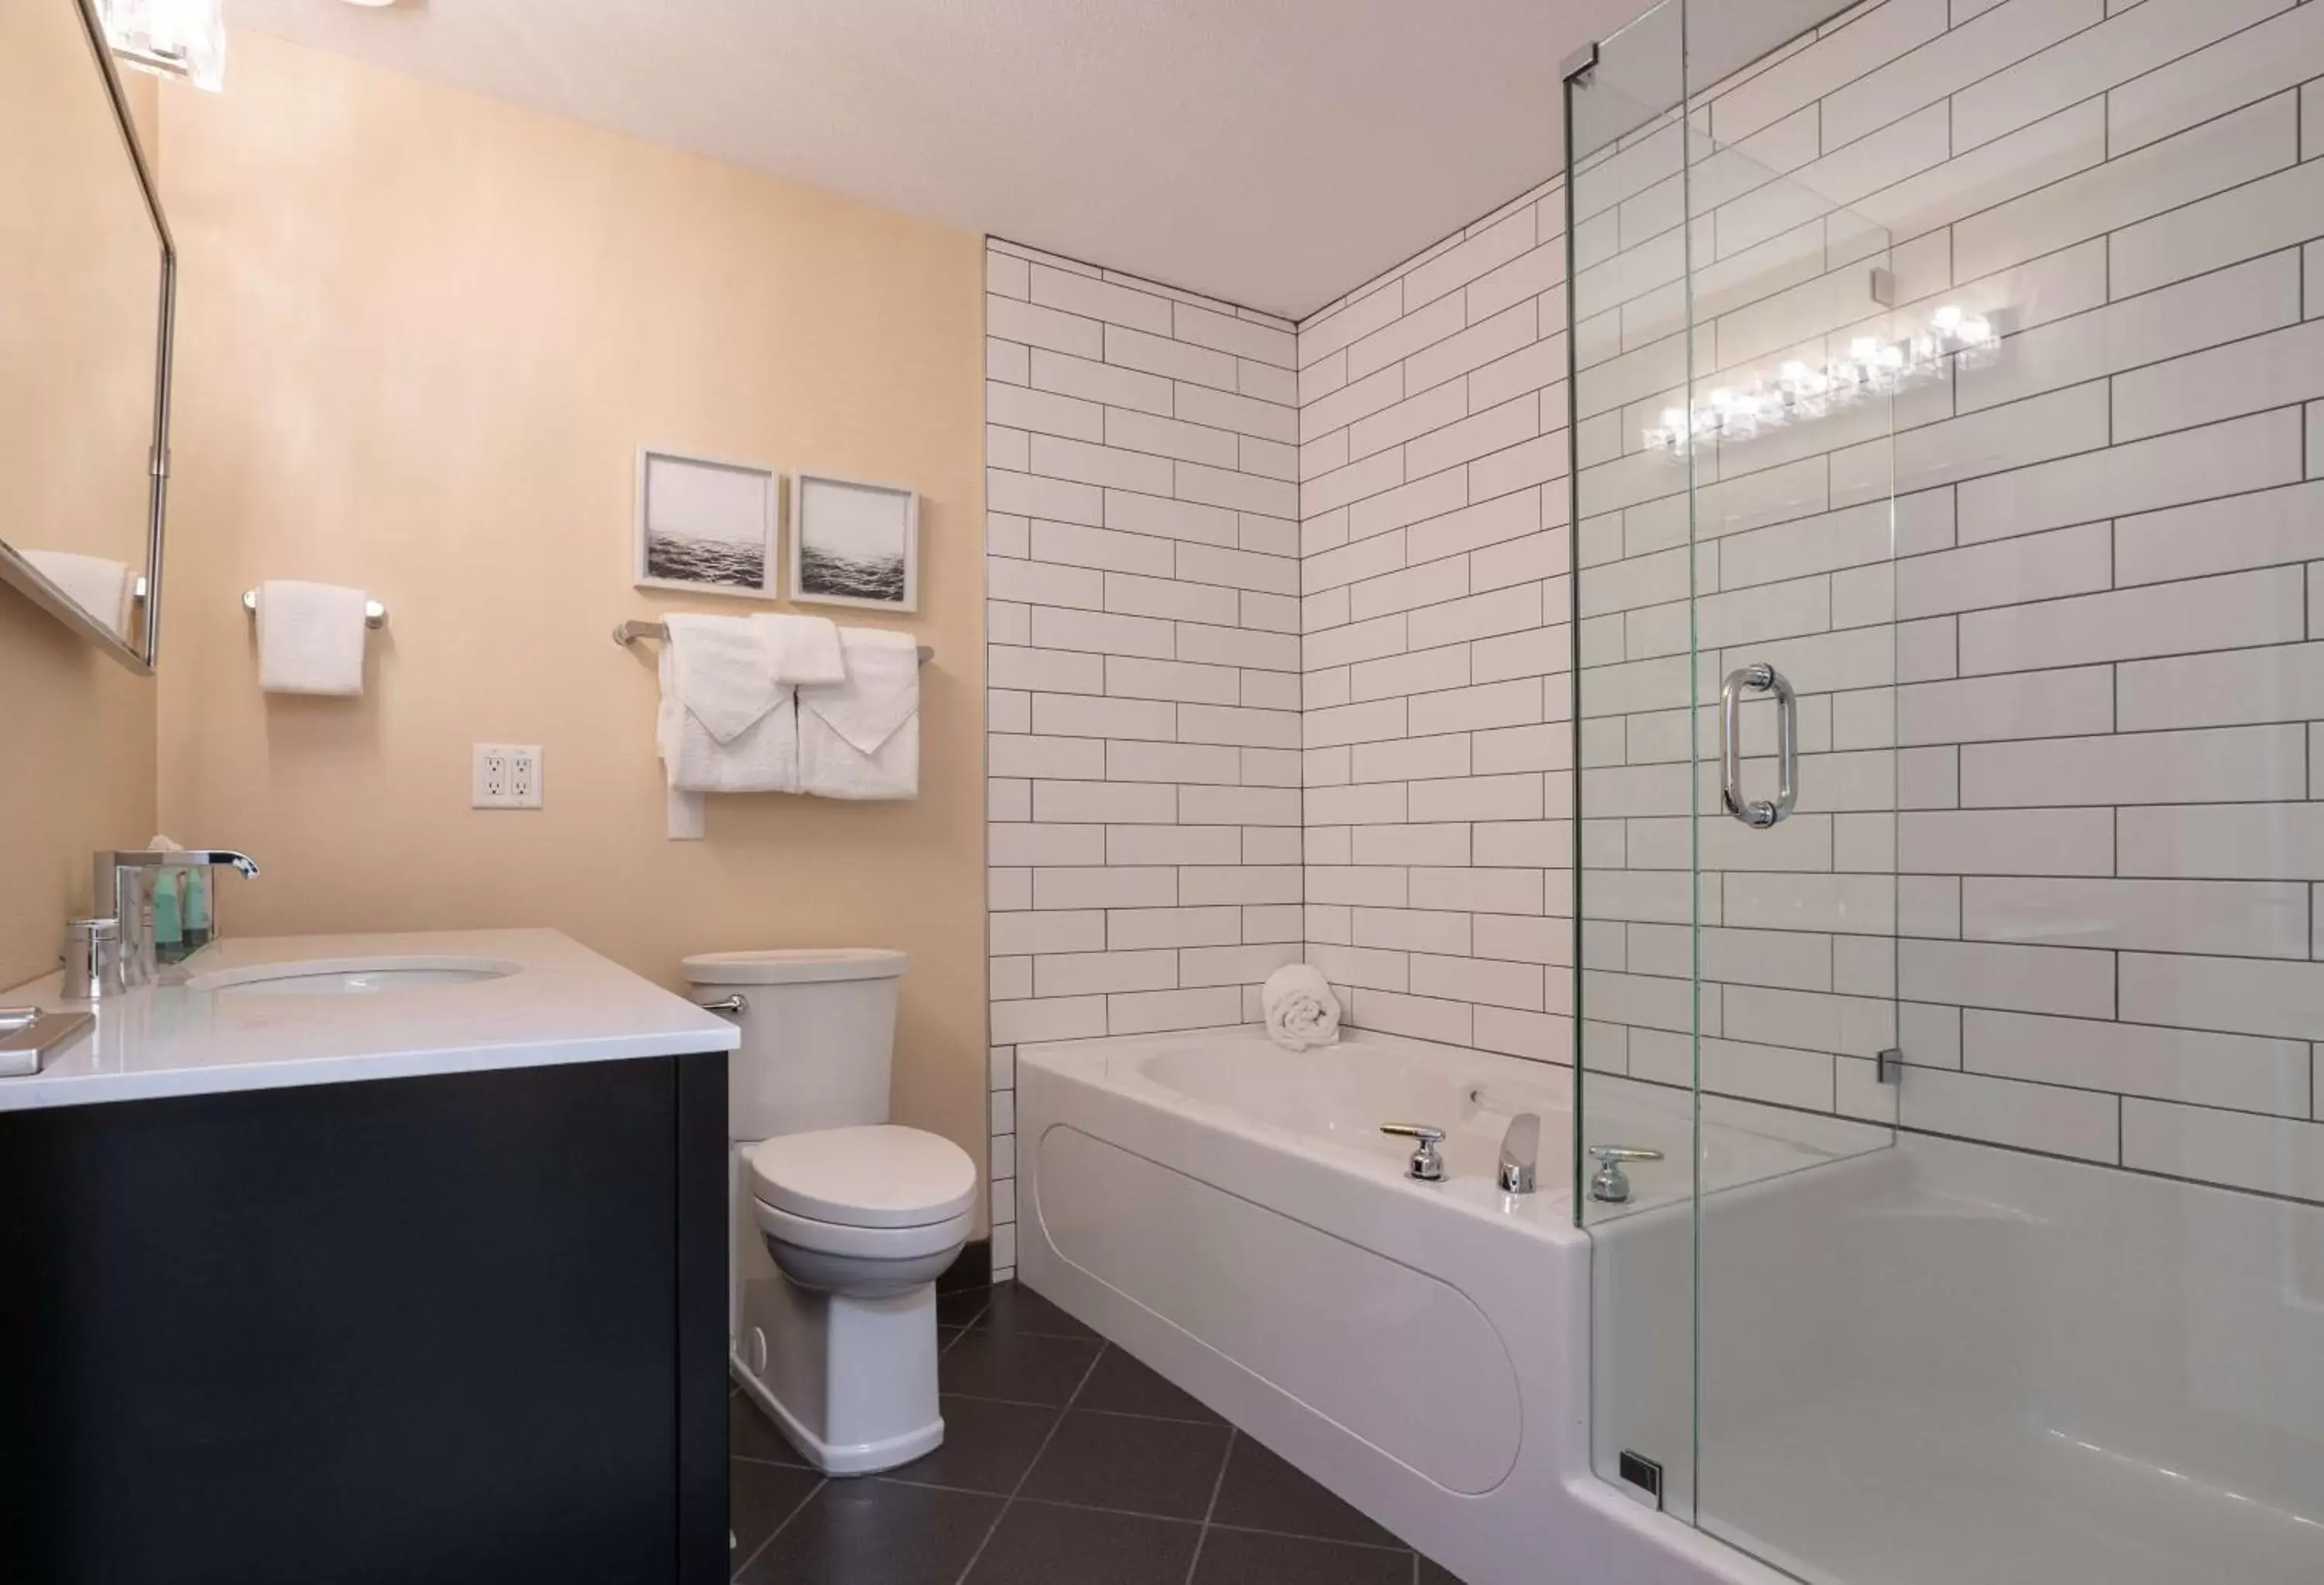 Bedroom, Bathroom in Prestige Harbourfront Resort, WorldHotels Luxury